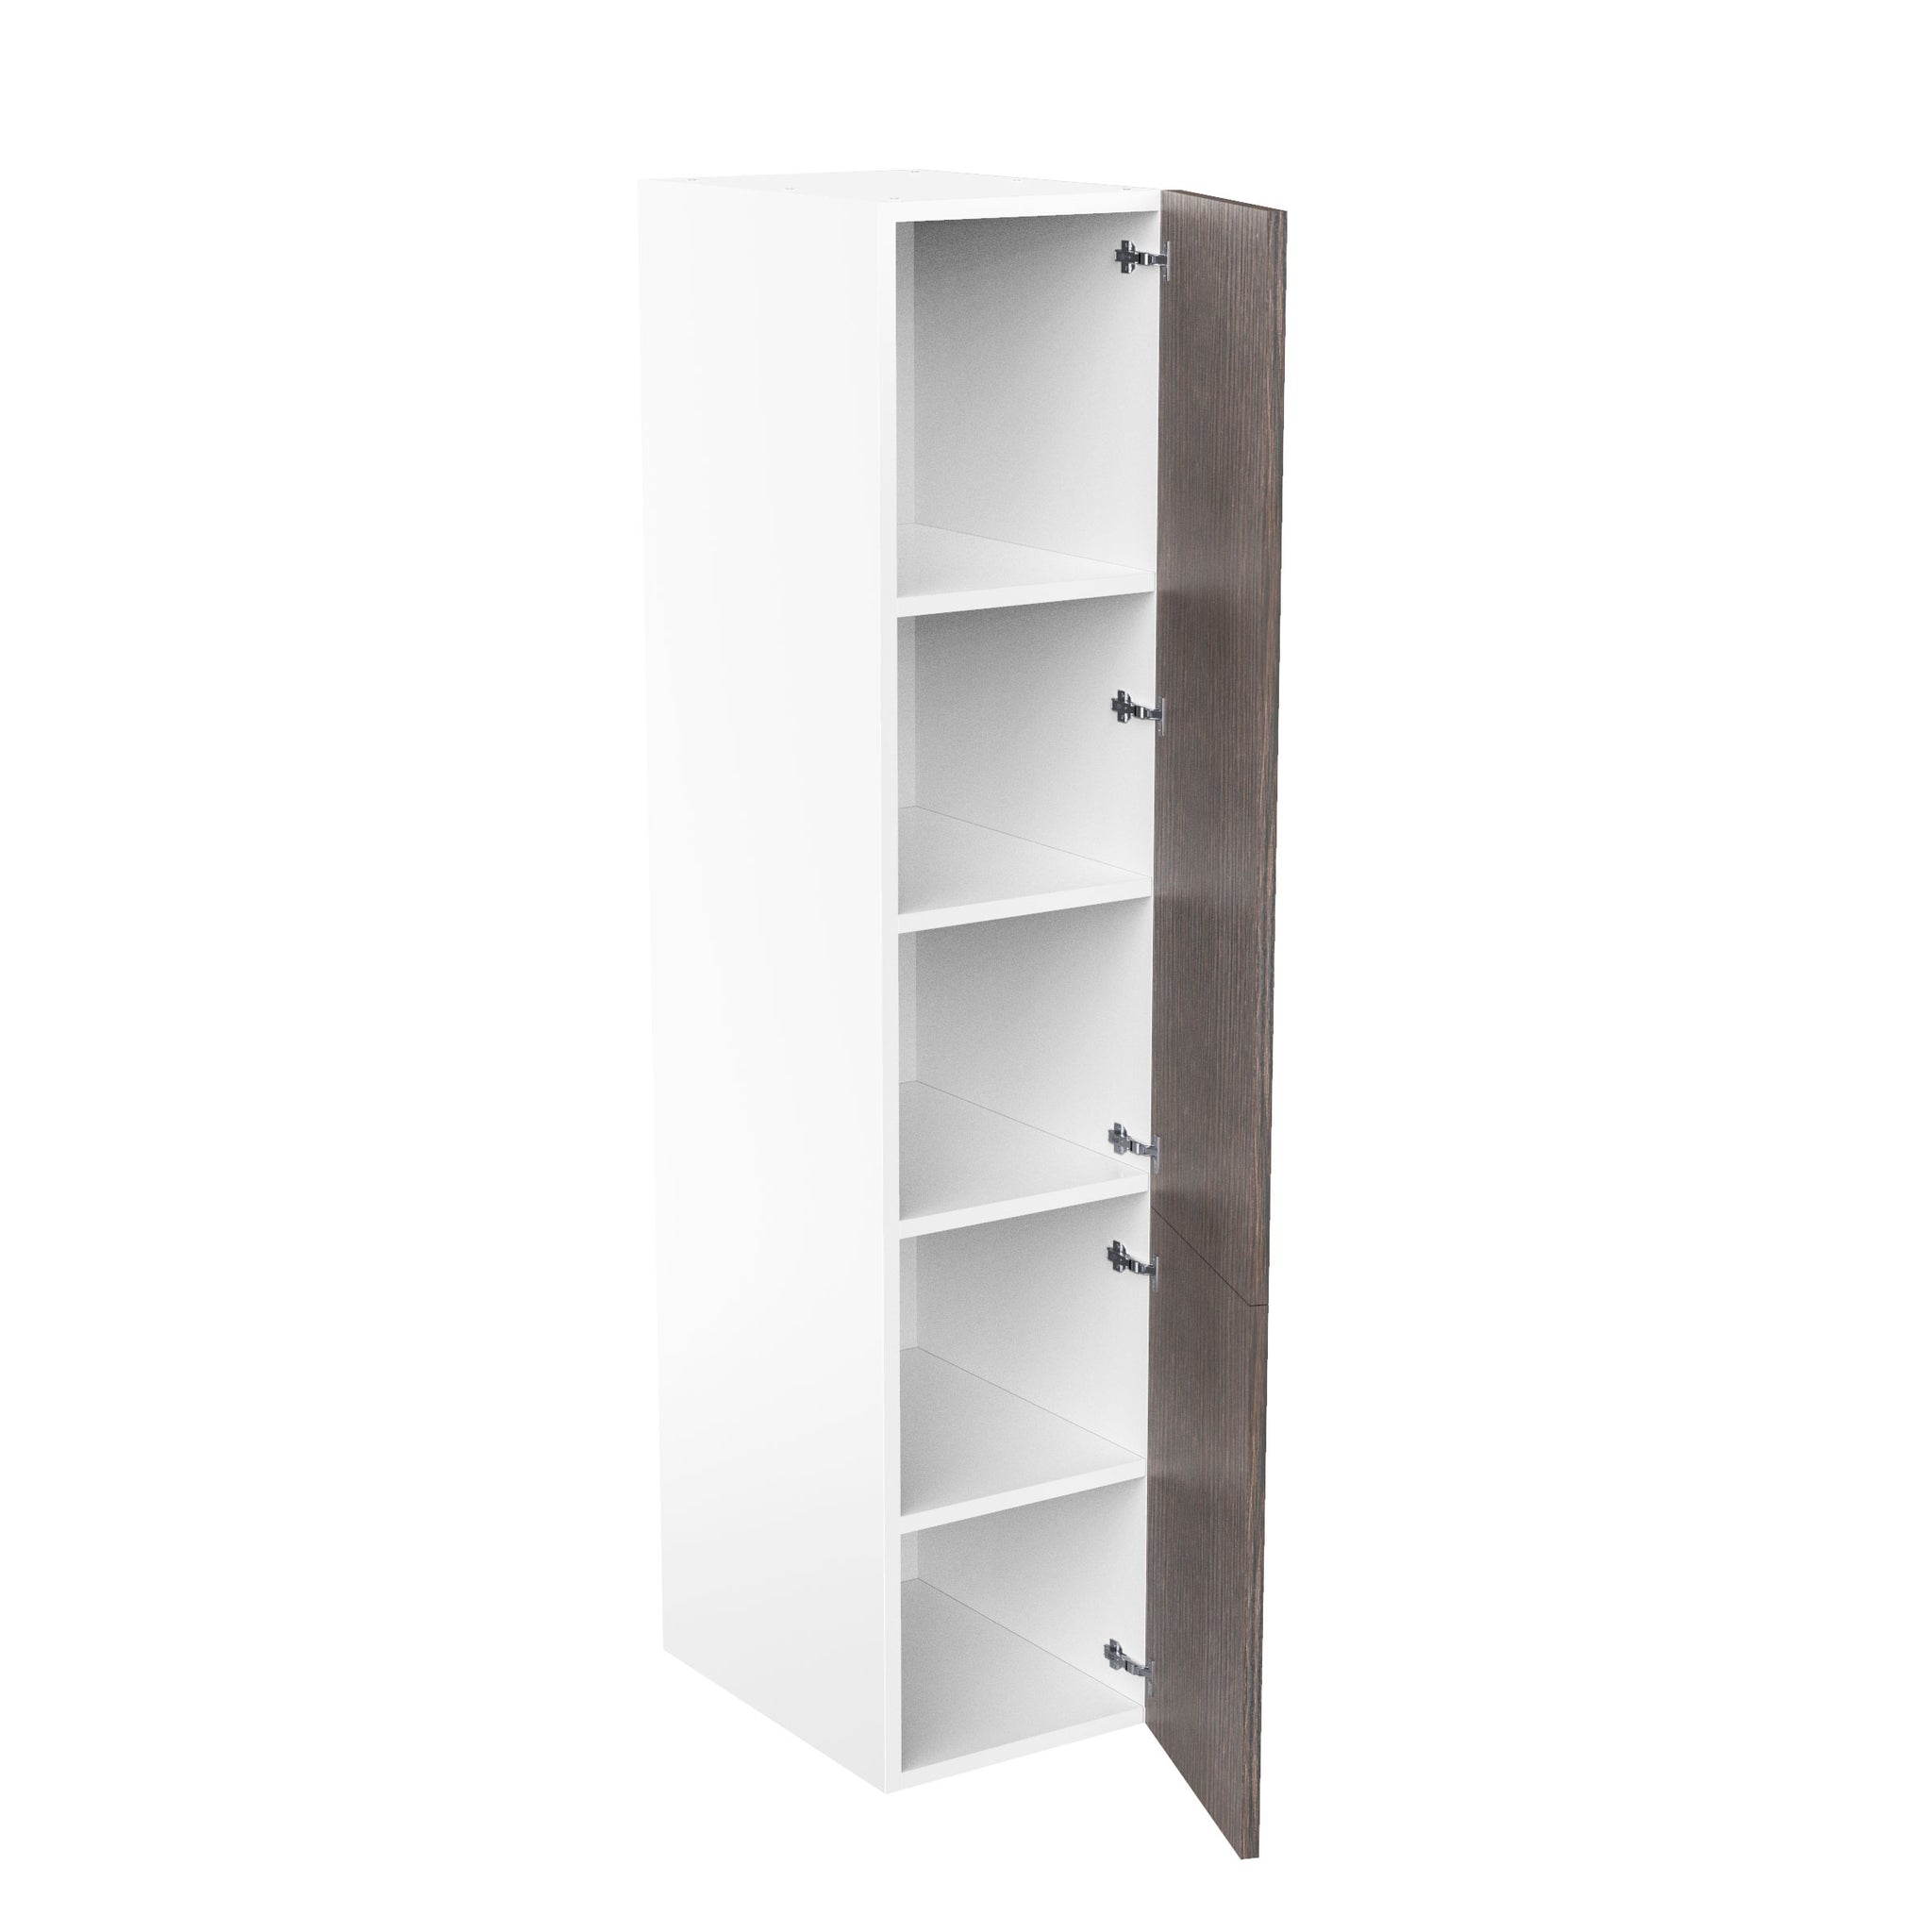 RTA - Brown Oak - Single Door Tall Cabinets | 18"W x 84"H x 23.8"D